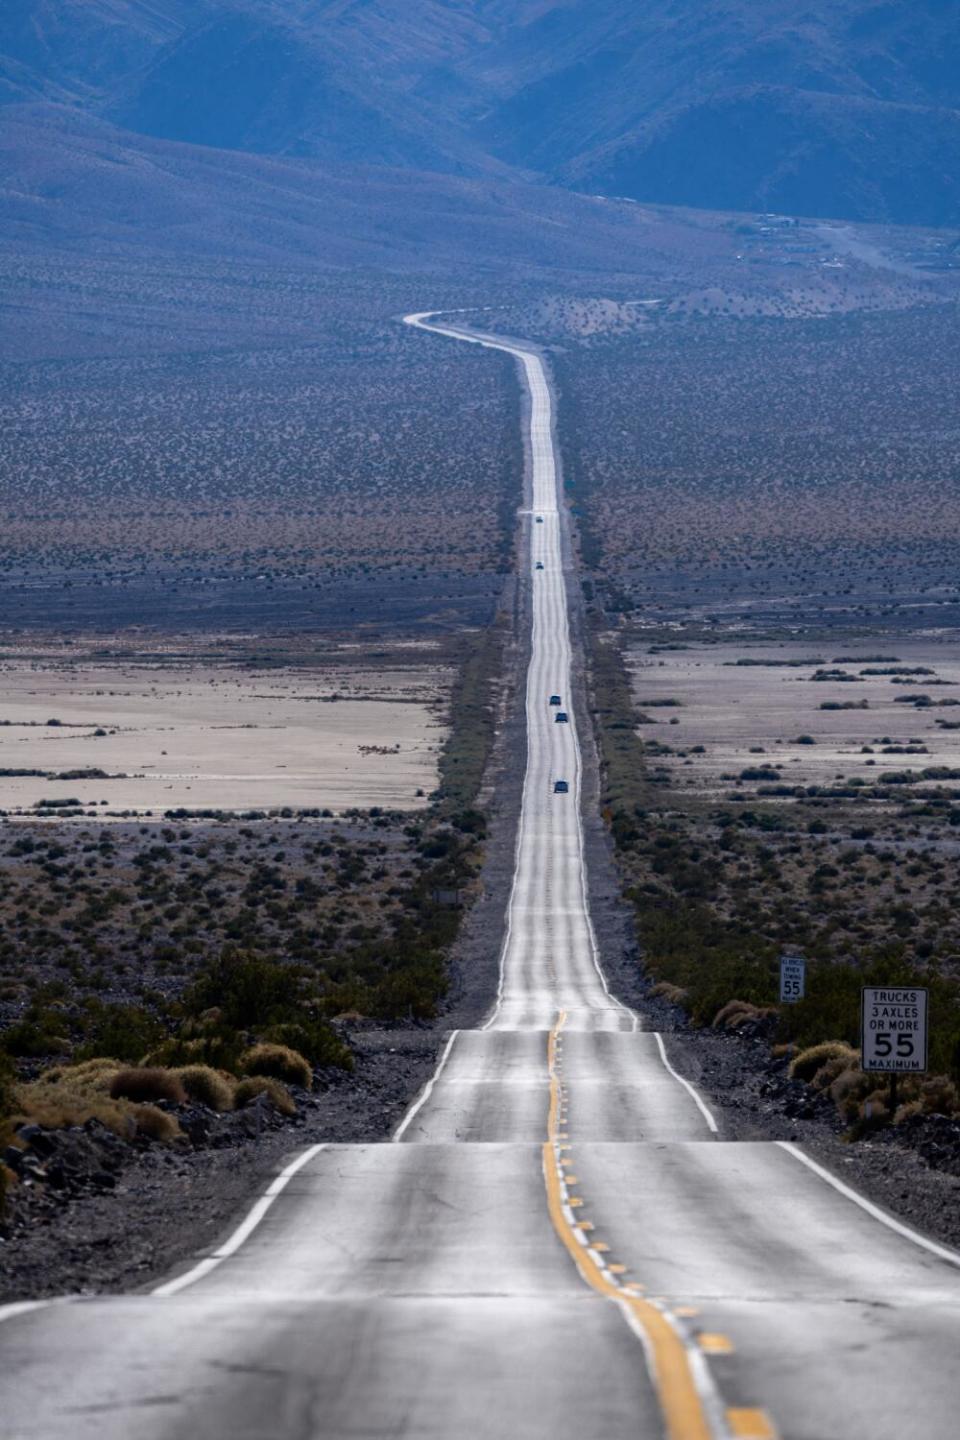 A road cuts through a desert.